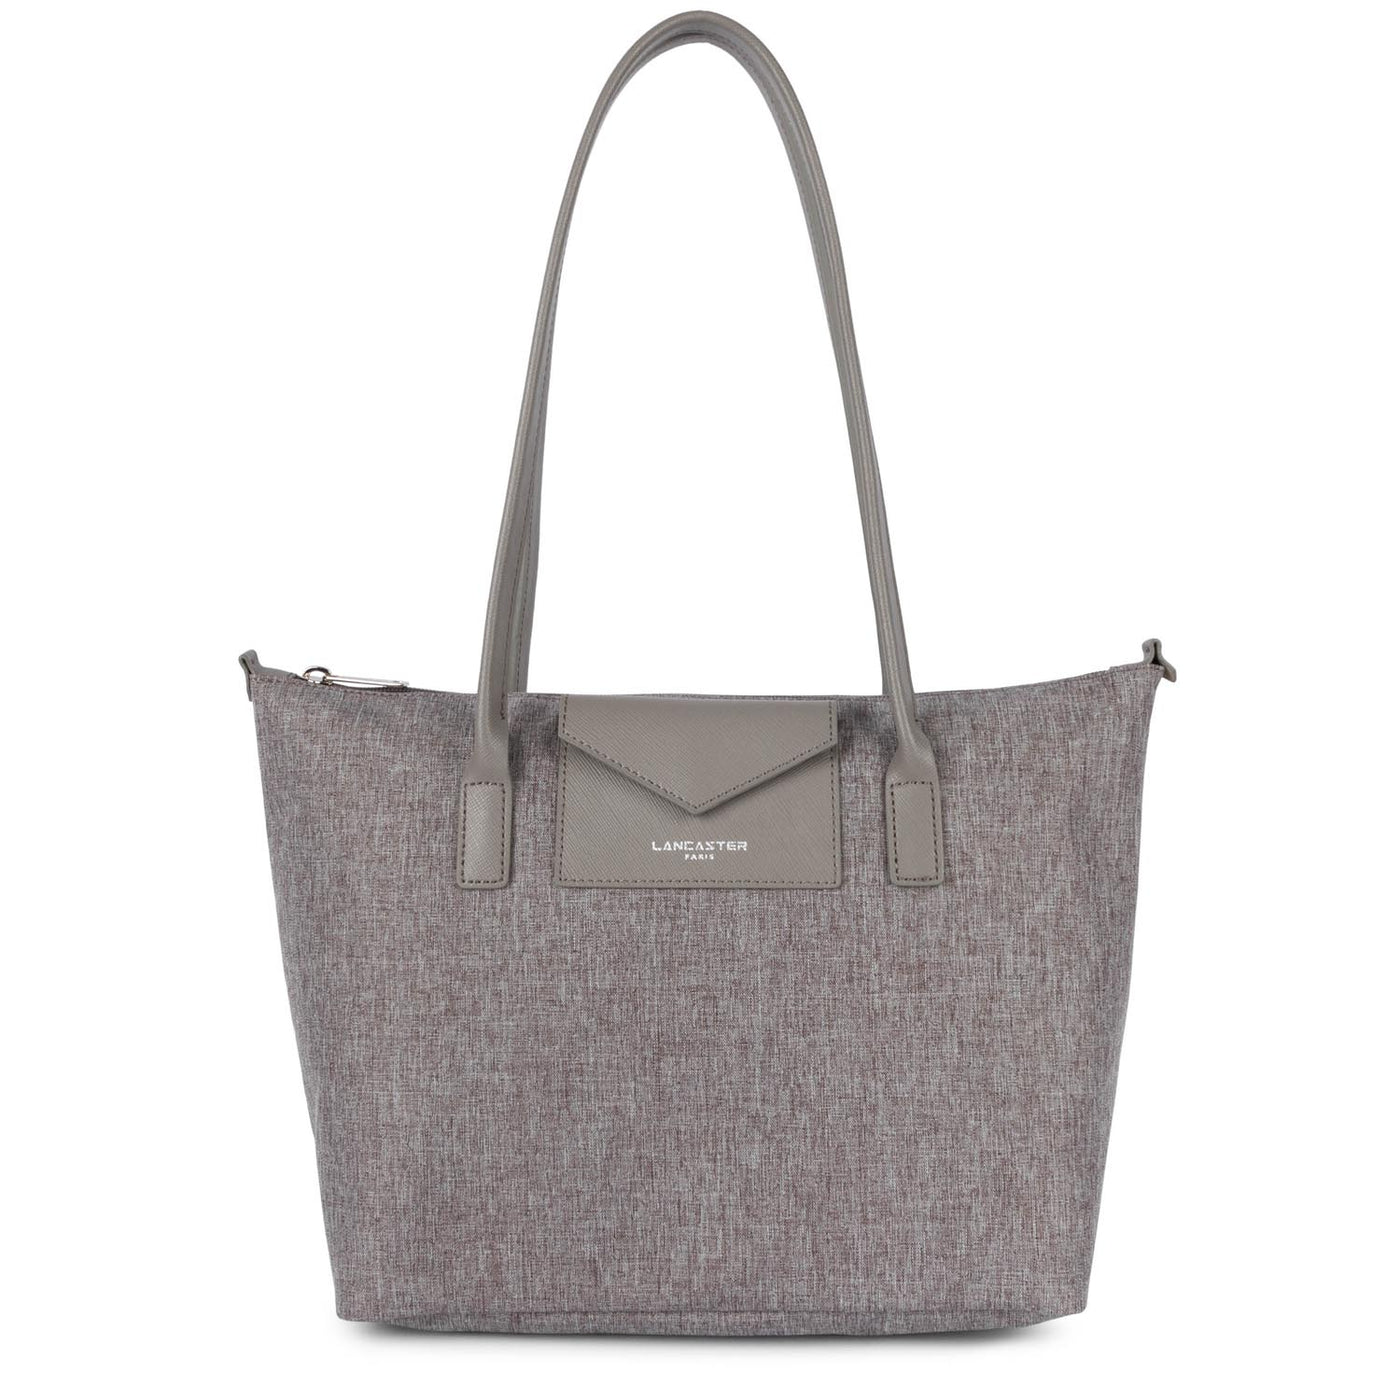 sac cabas épaule - smart kba #couleur_gris